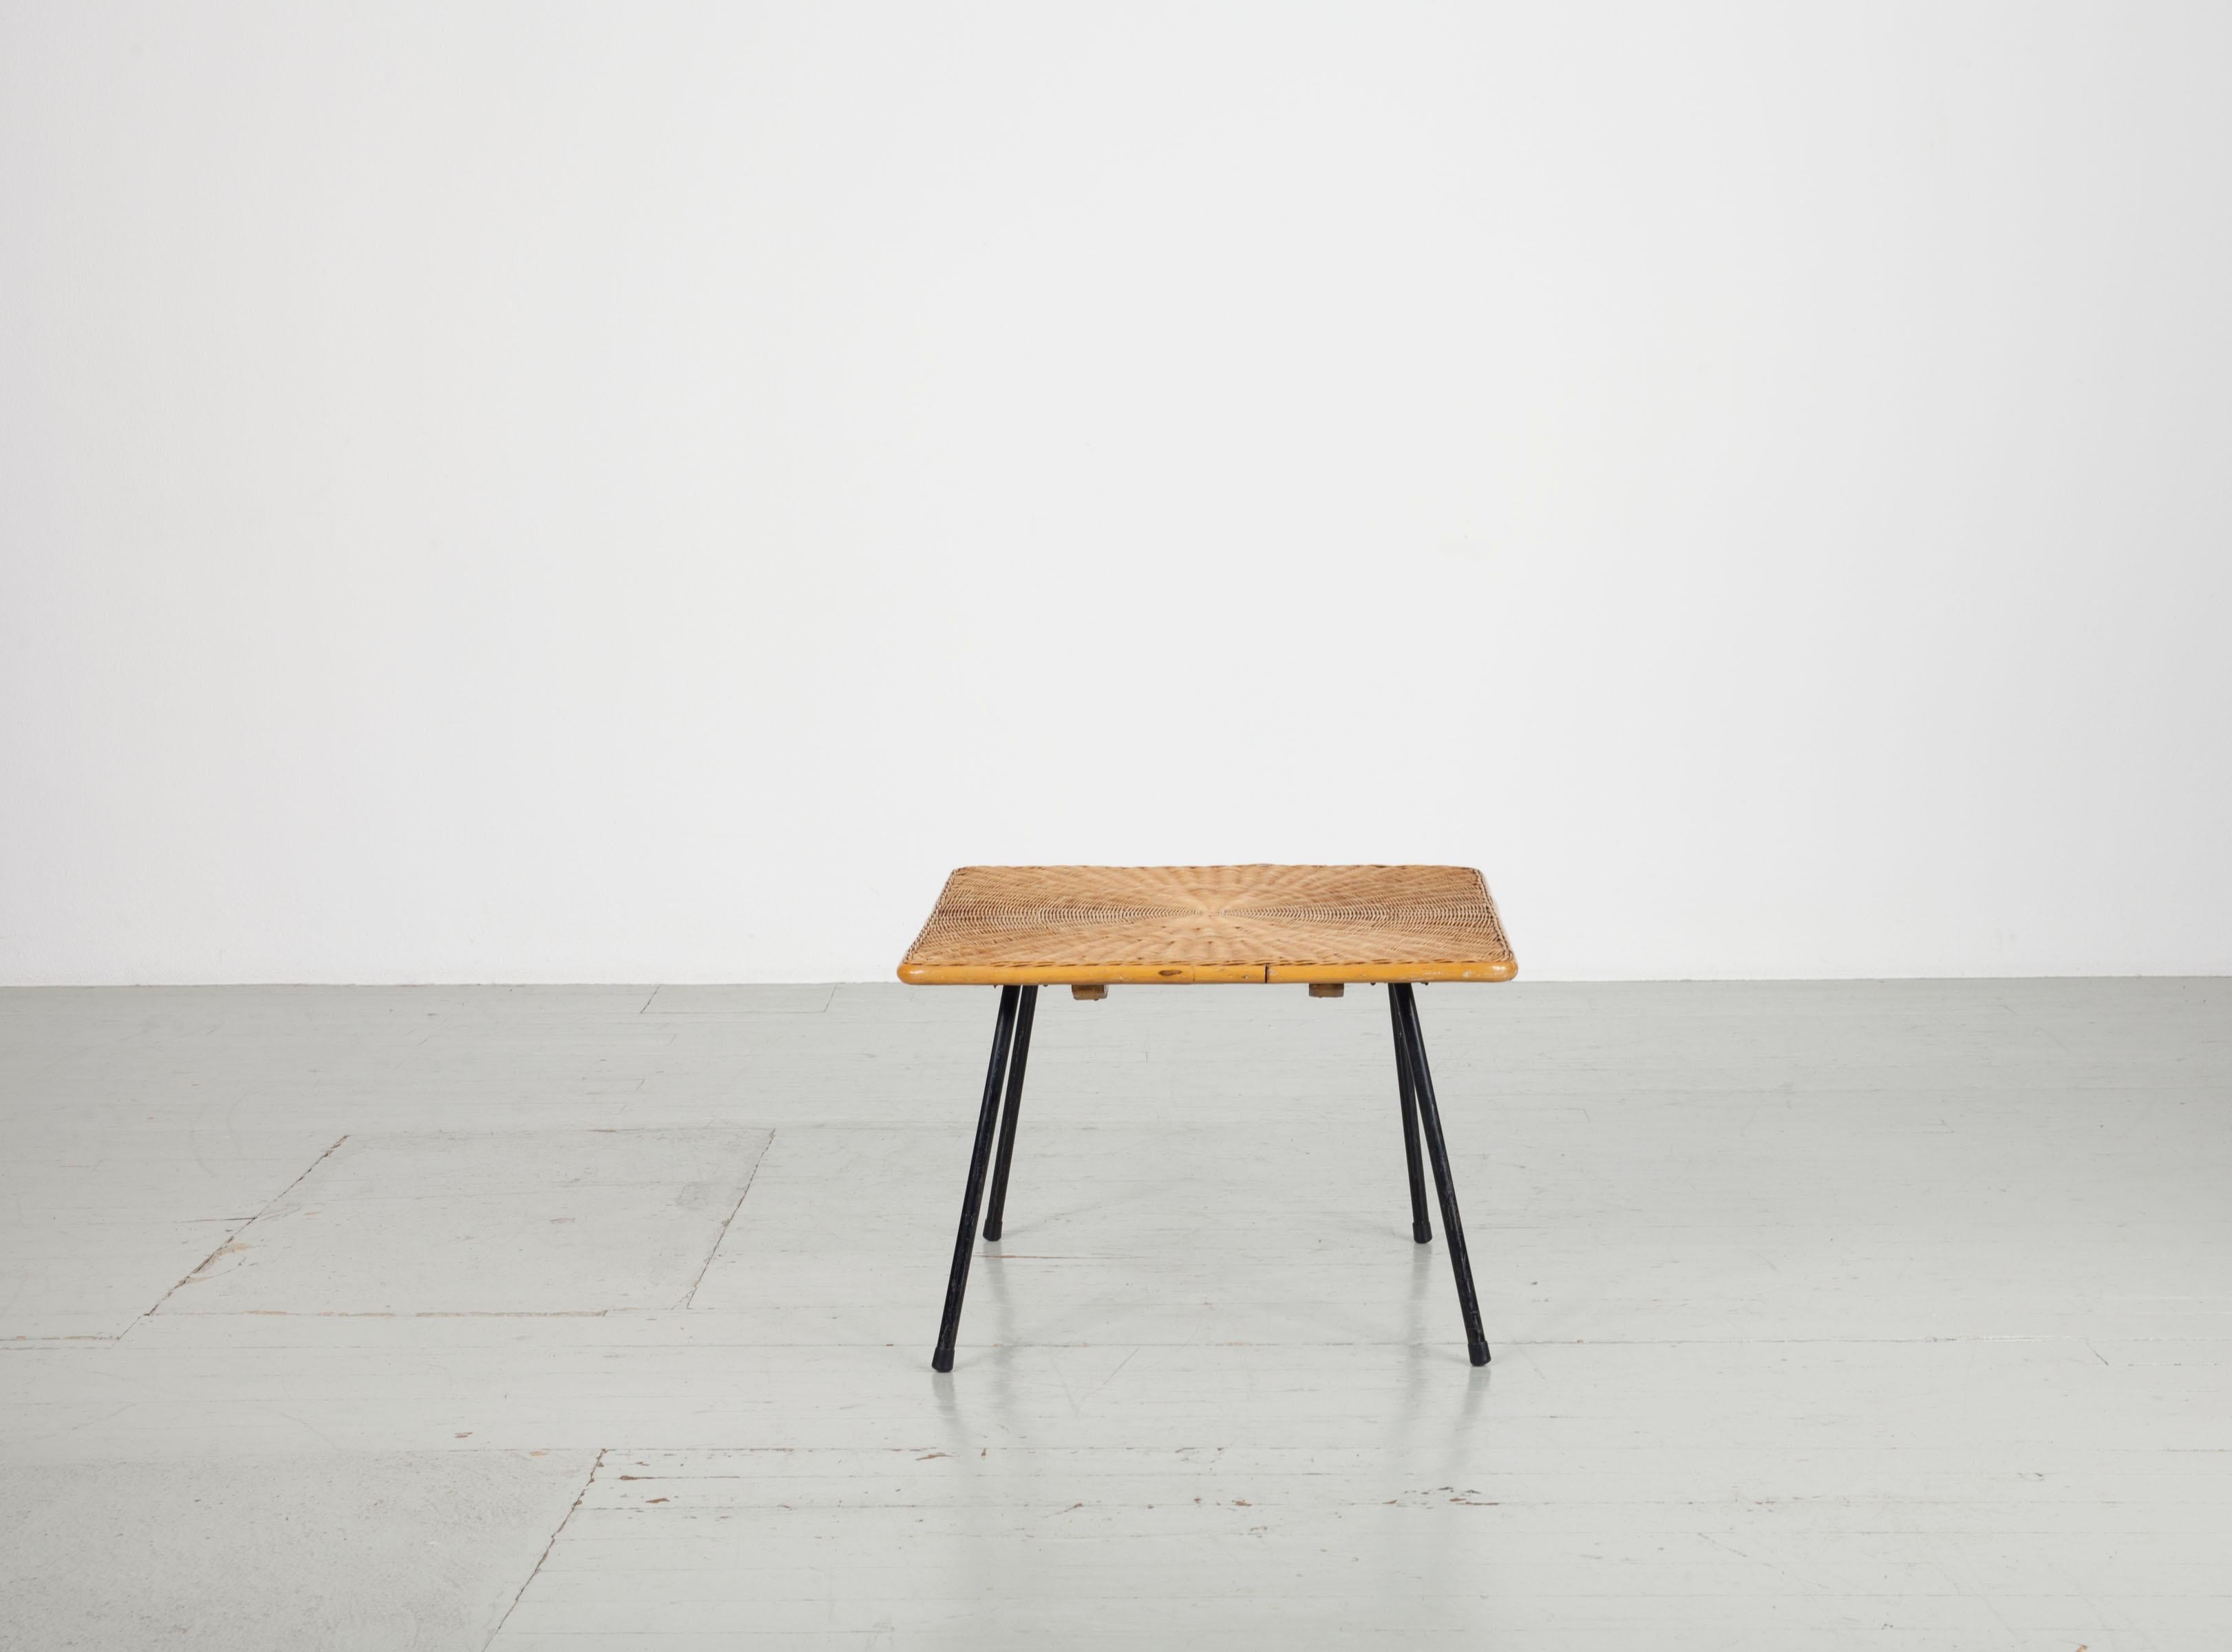 Table de canapé carrée en osier des années 1950 avec 4 pieds en métal laqué noir. La vannerie repose sur une construction en bois et rend la table très stable. La bordure est faite de bambou. Les pieds peuvent être retirés. De la période Auböck.